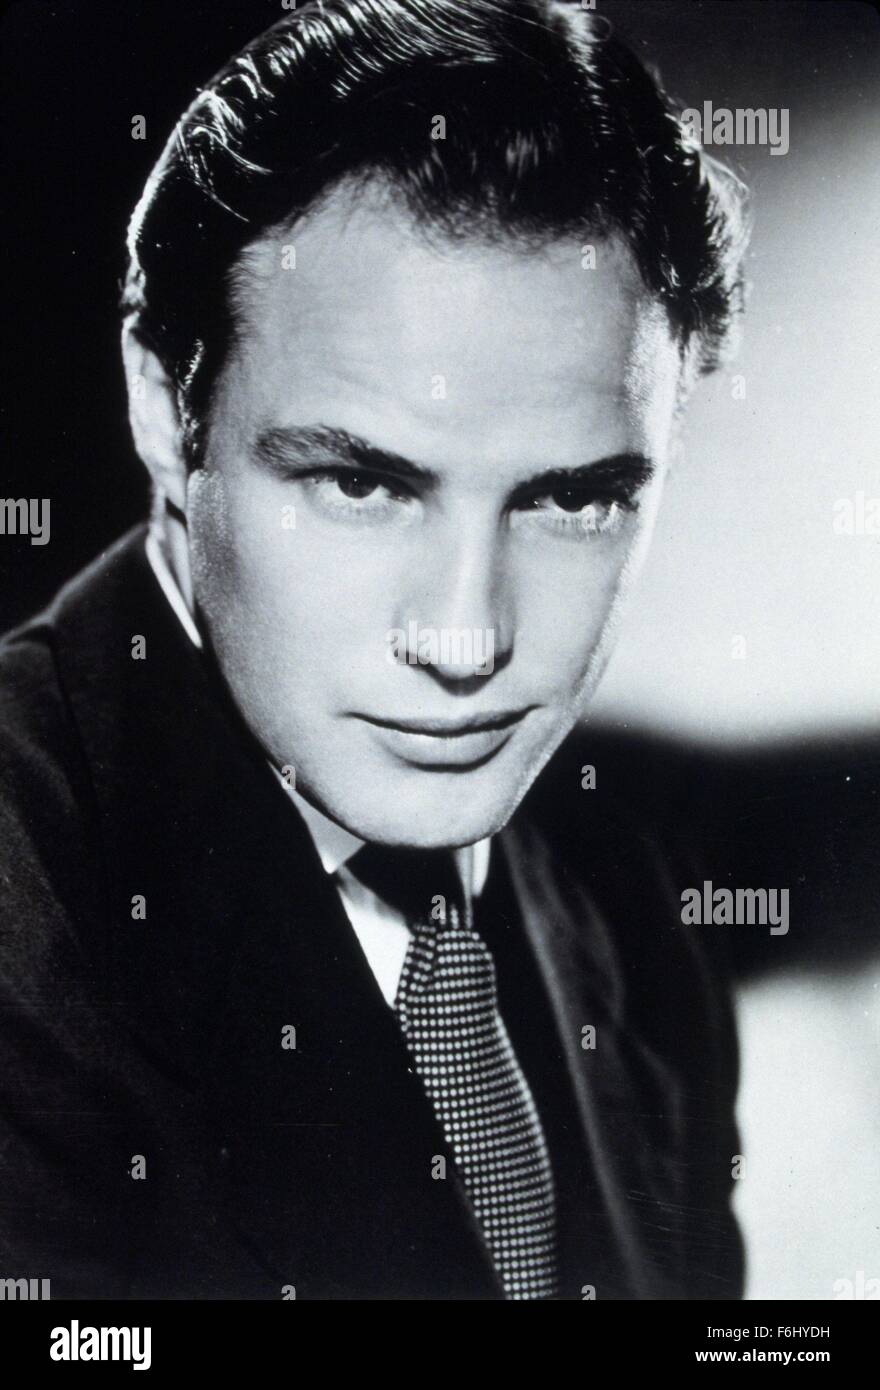 Jul 02, 2004 ; Hollywood, Californie, USA ; (PHOTO) acteur légendaire Marlon Brando est décédé à l'âge de 80 ans de causes inconnues à Los Angeles. Sa longue carrière d'inclus les films tels que "Un tramway nommé désir", "Apocalypse Now", l'X-rated "Dernier tango à Paris" et son fameux 'Le Parrain." Photo : 1950, Titre du film : LES HOMMES, Directeur : Fred Zinnemann, Photo : Marlon Brando, cheveux - MARÉE NOIRE, costume, MOODY, portrait, studio, débonnaire, forte. Banque D'Images